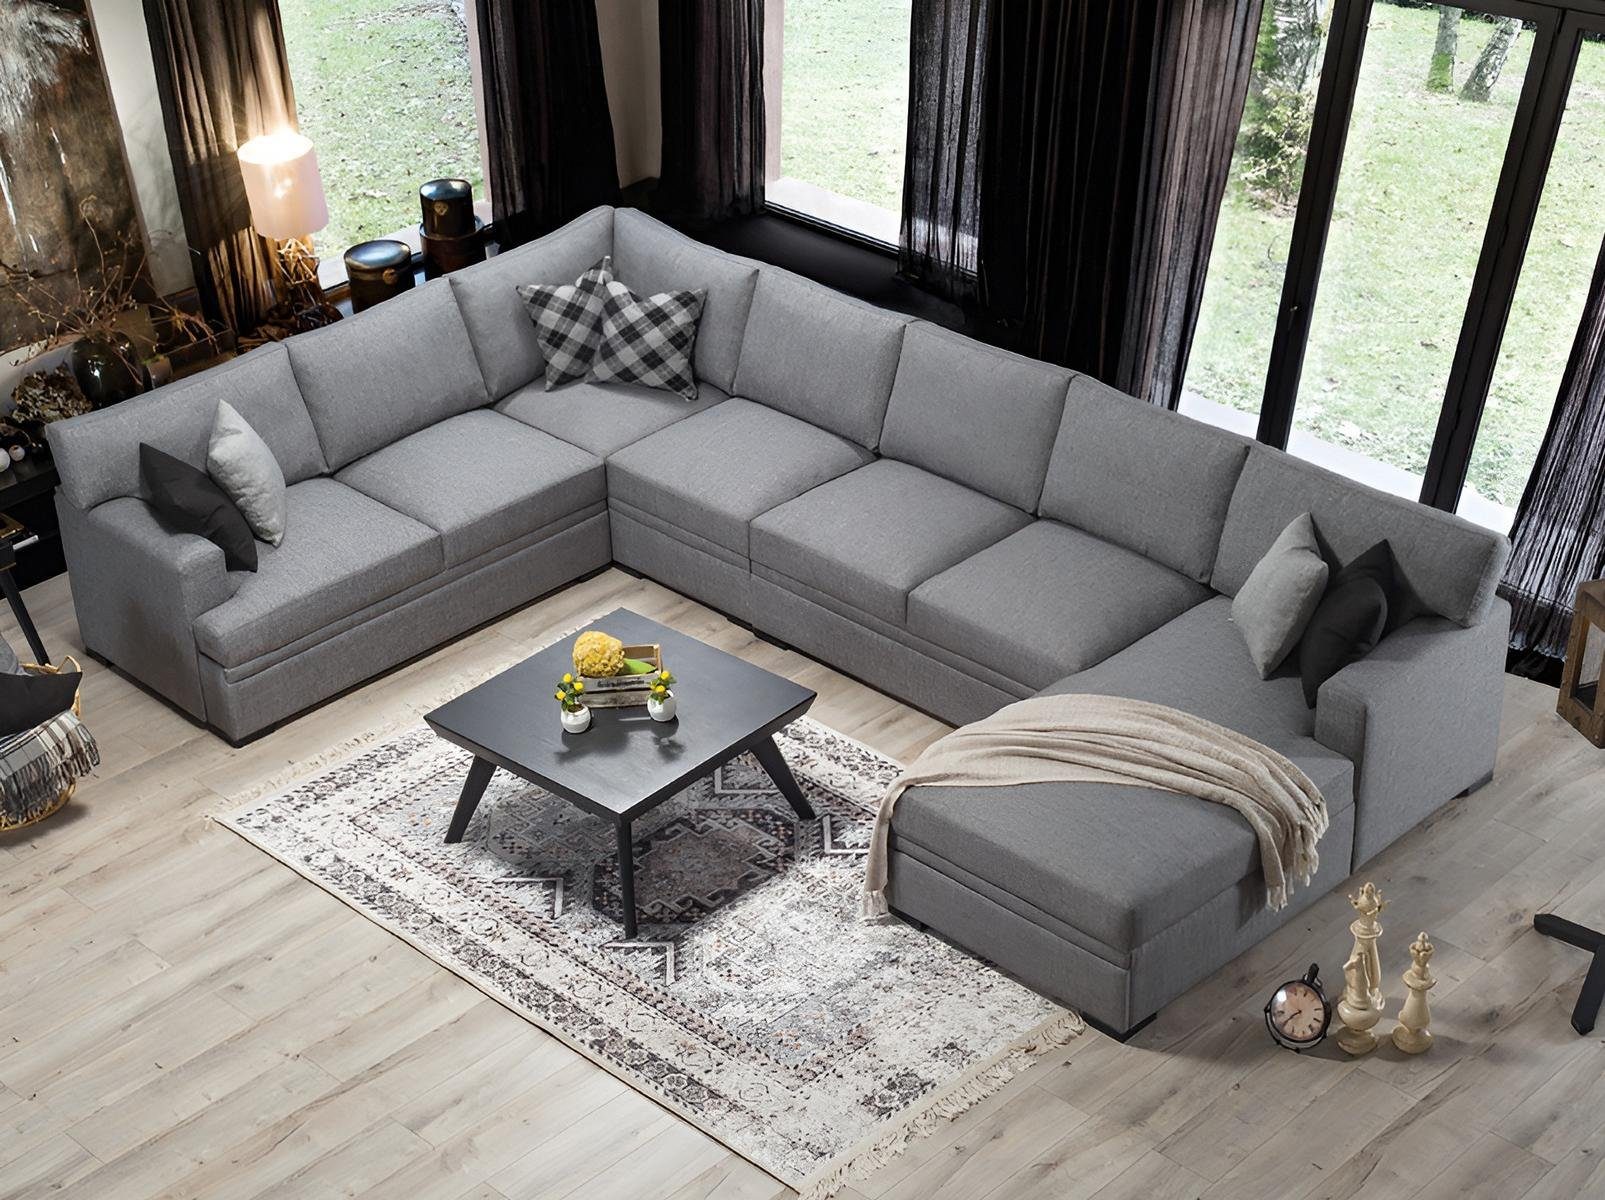 JVmoebel Ecksofa Modern U-Form 1 Grau Neu, Möbel Design Einrichtung Sofa Teile, Made Wohnzimmer in Europa